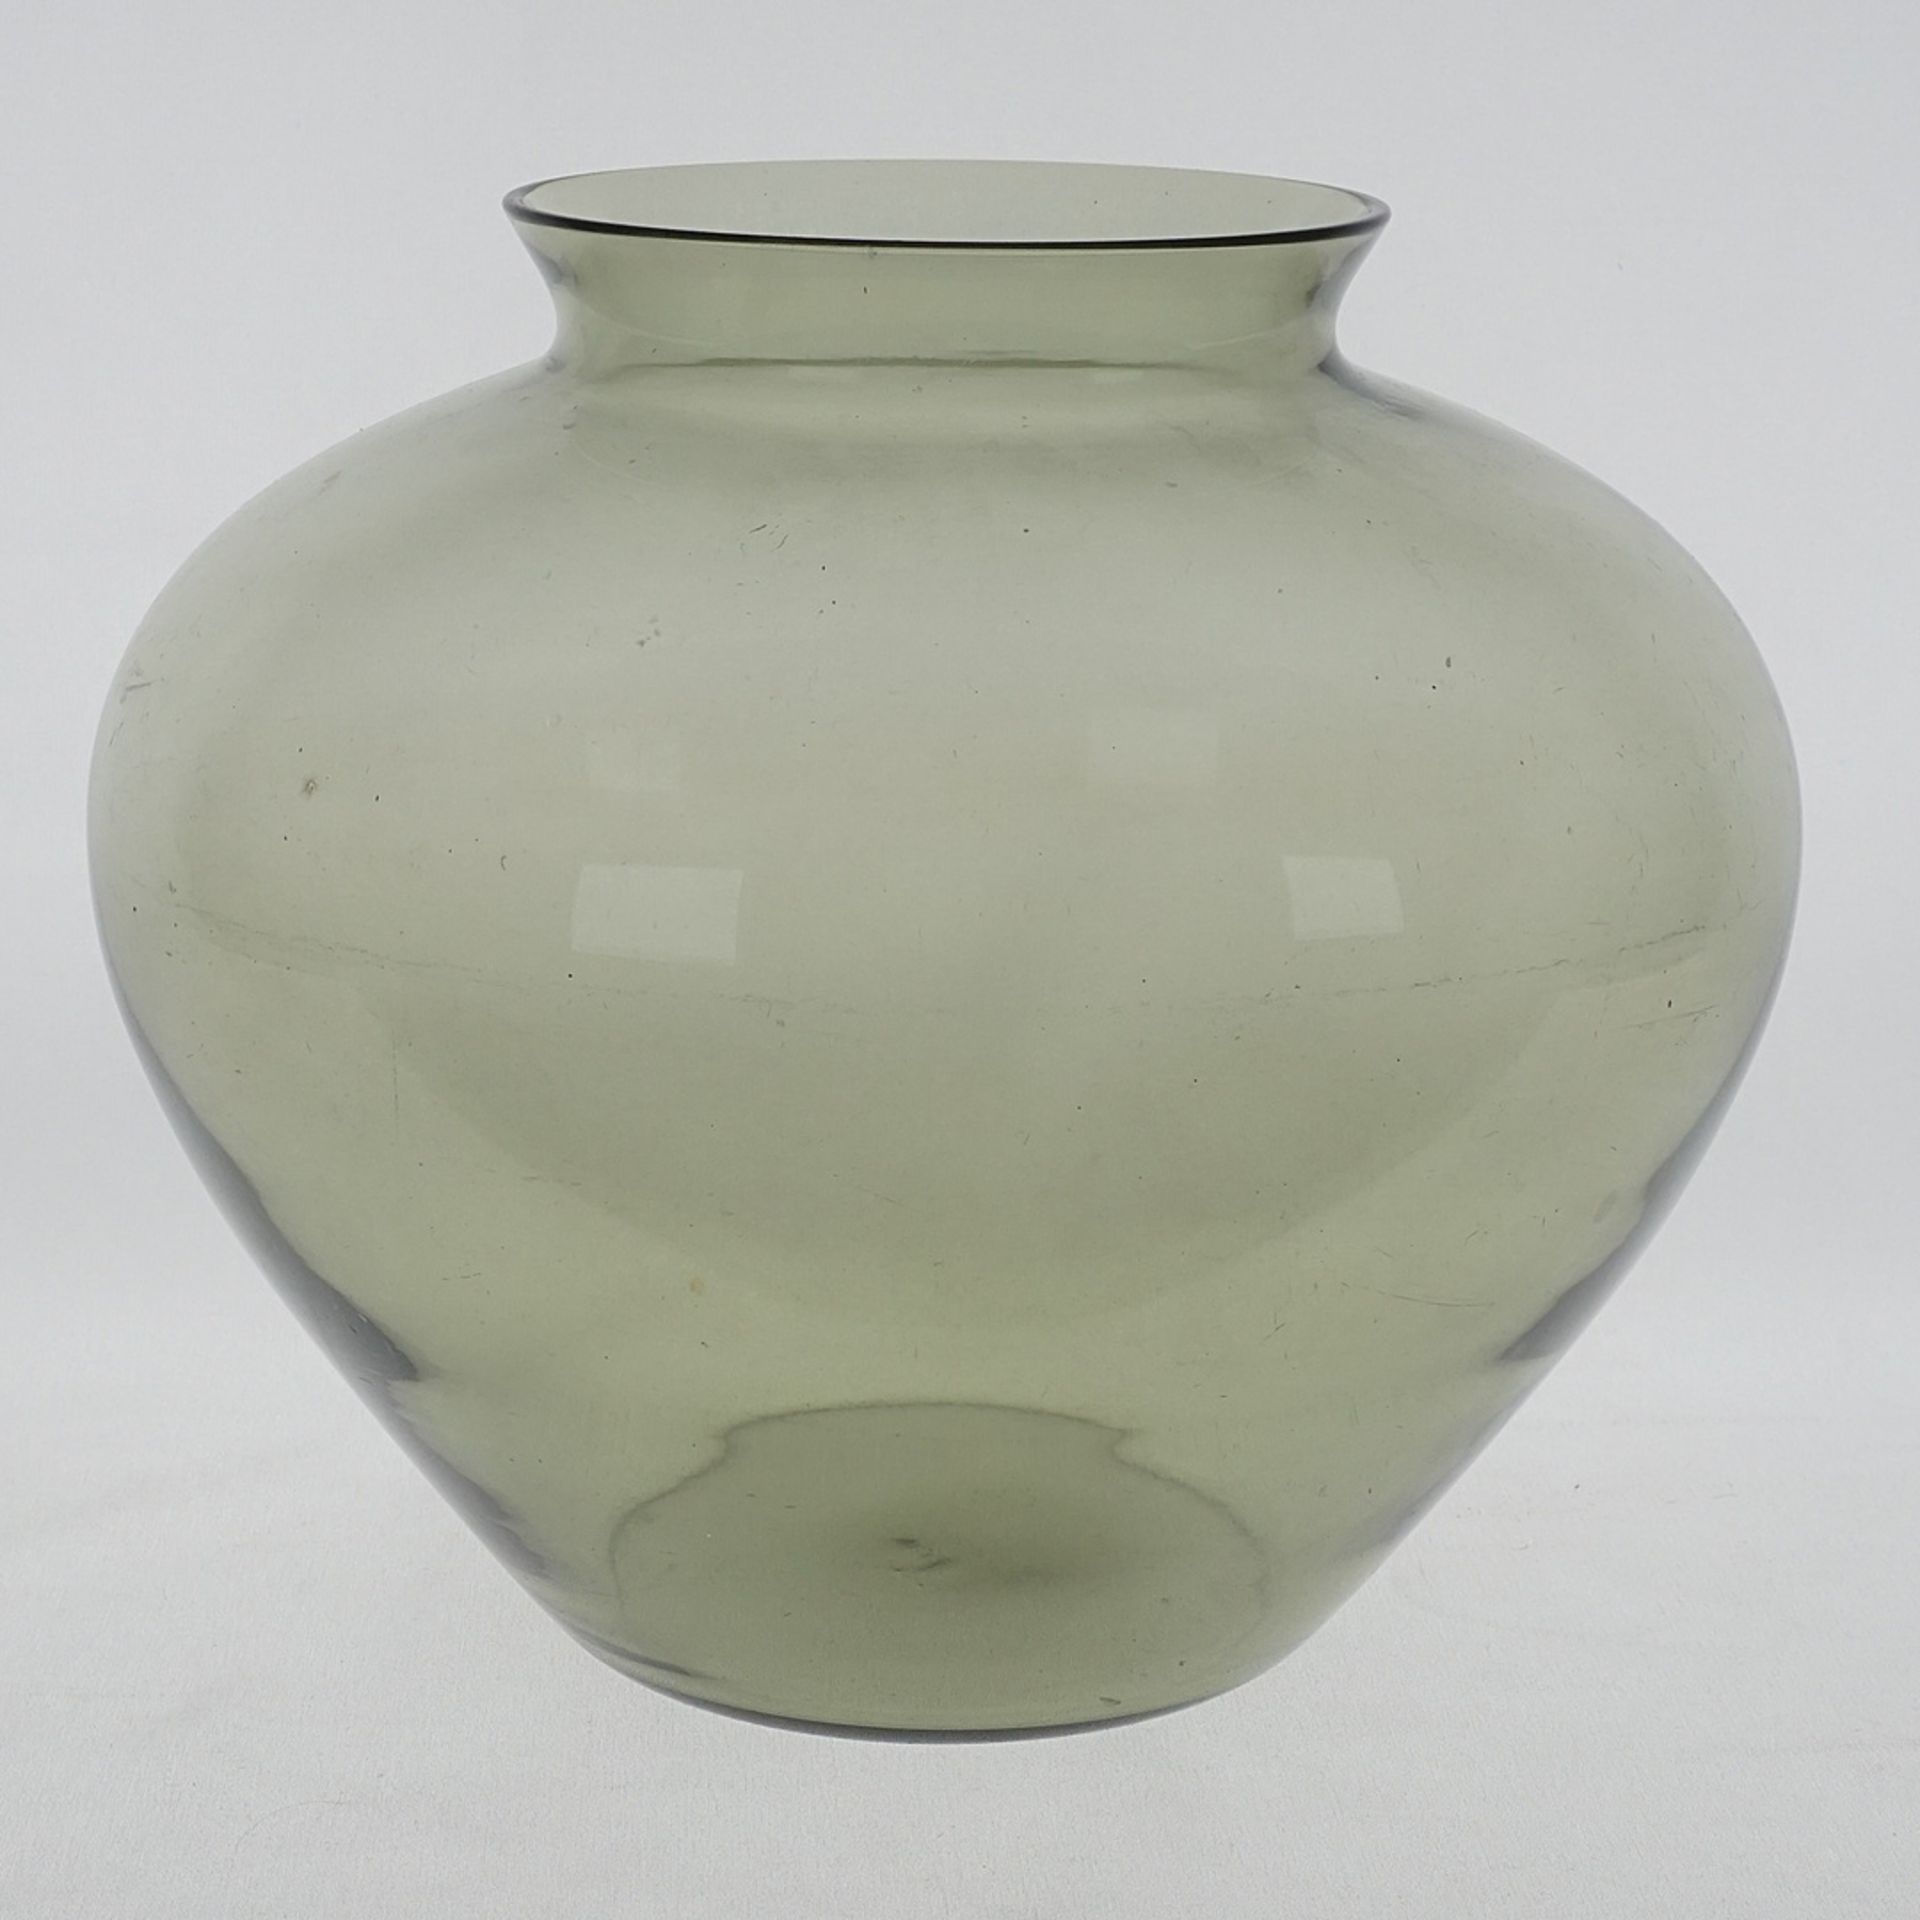 Wilhelm Wagenfeld (1900-1990), WMF vase, 1950